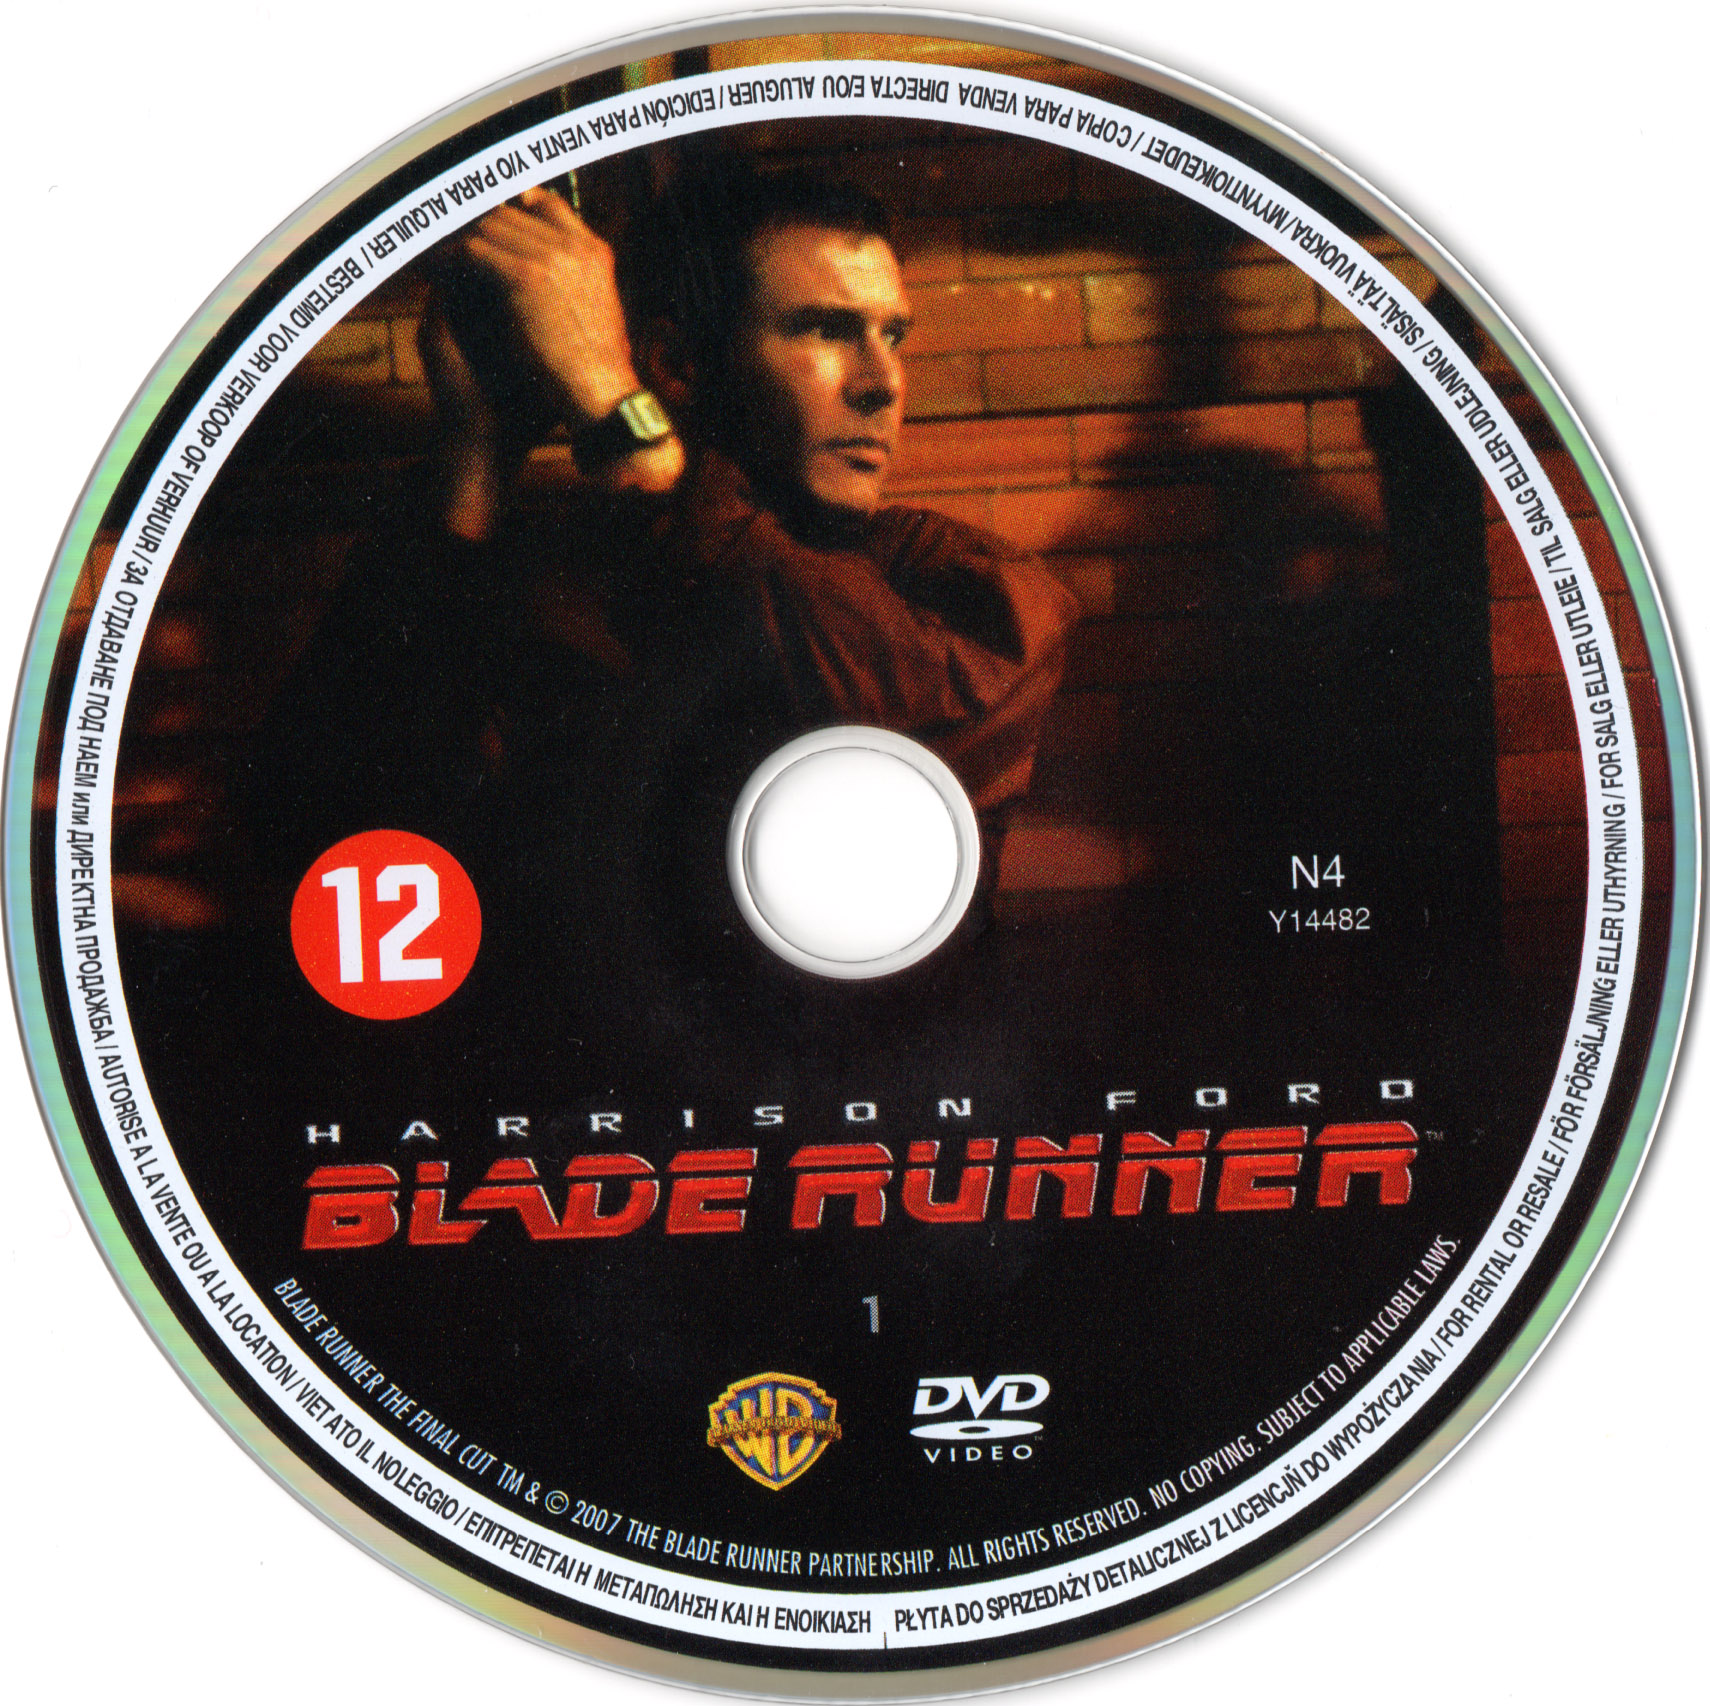 Blade runner DISC 1